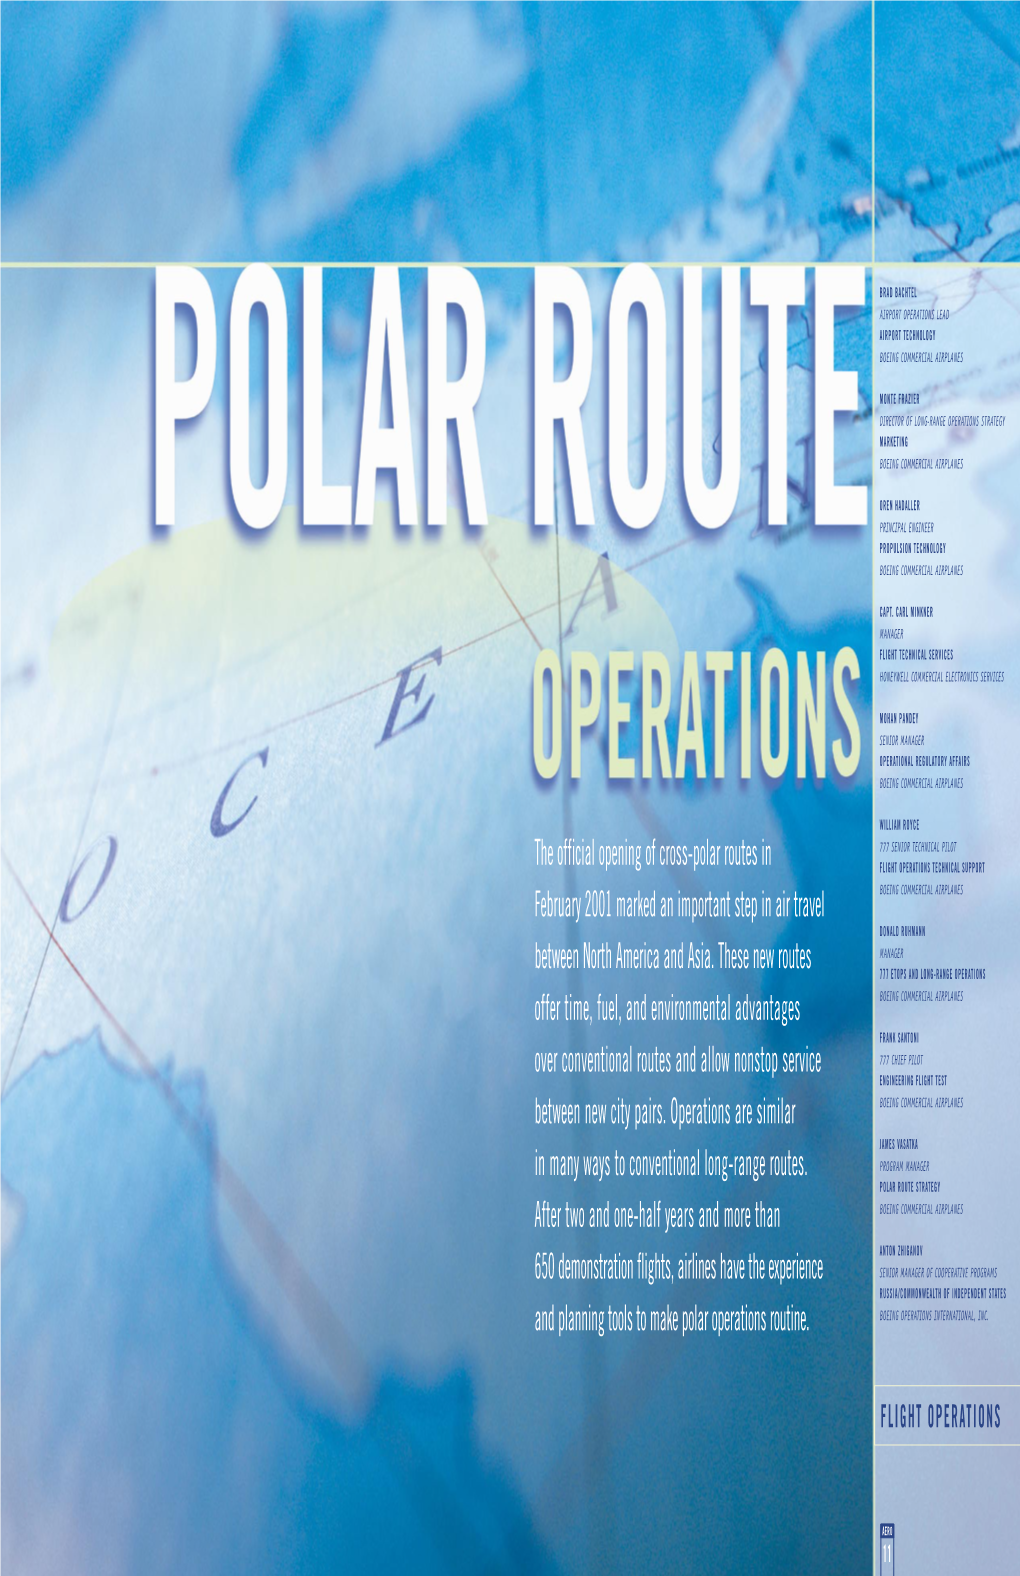 Polar Routes